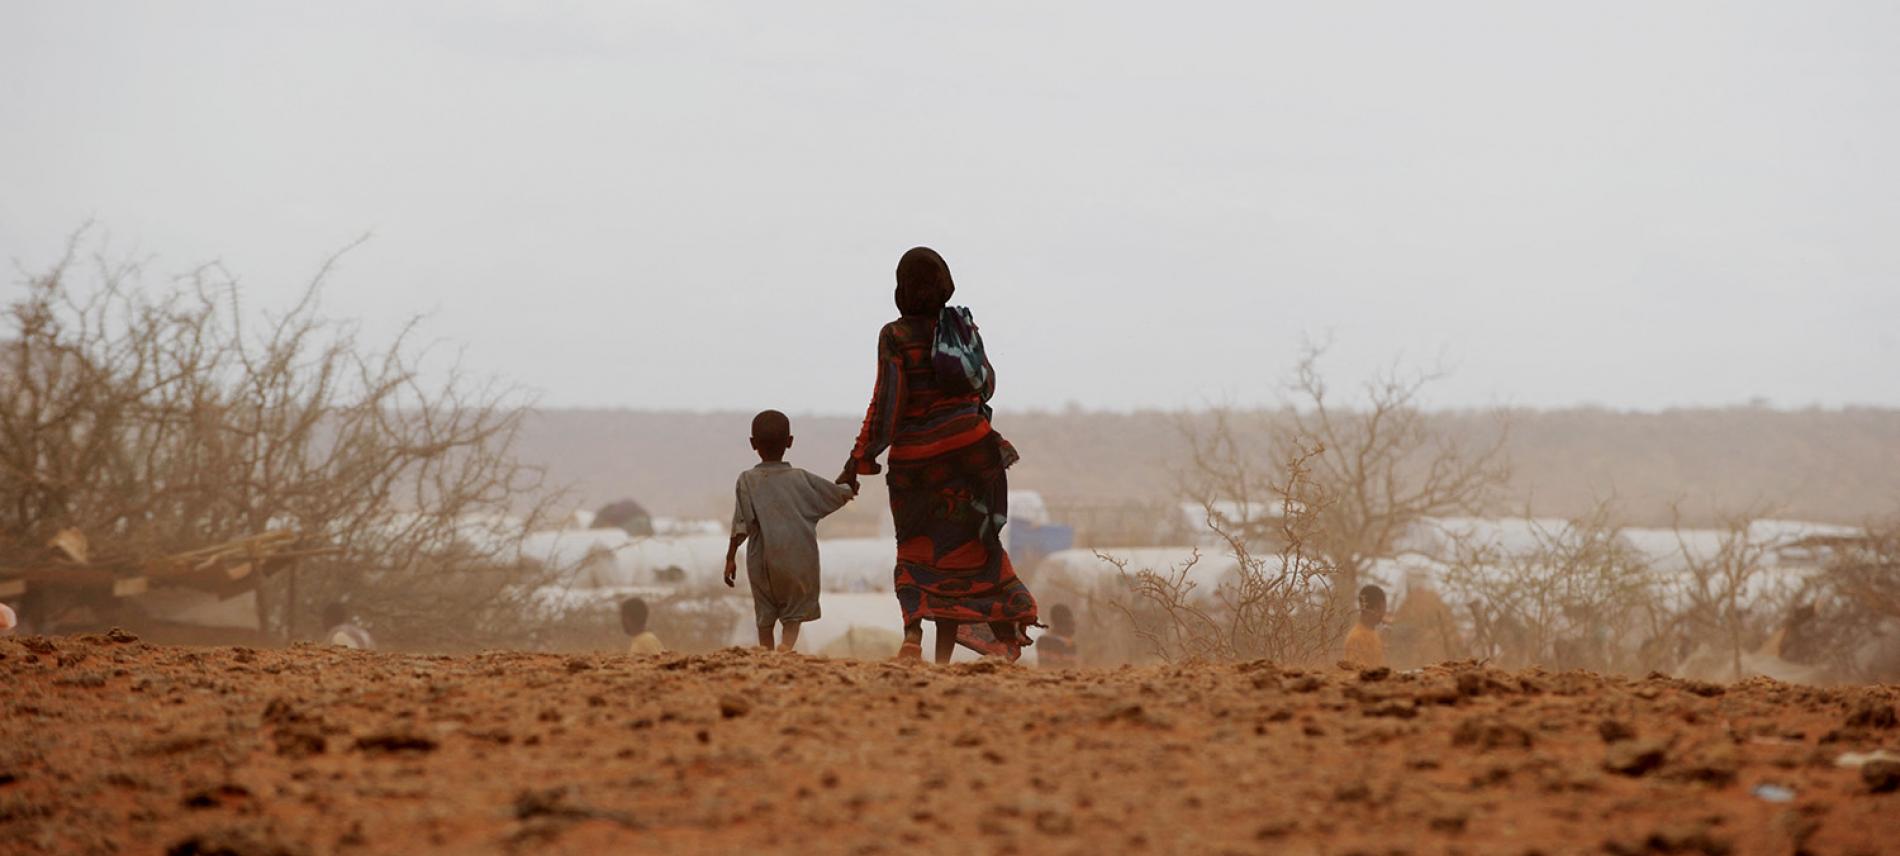 Eine Mutter und ihr Kind auf dem Weg durch eine ausgetrpcknete Landschaft in Äthiopien. Foto: Roberto Schmidt / AFP